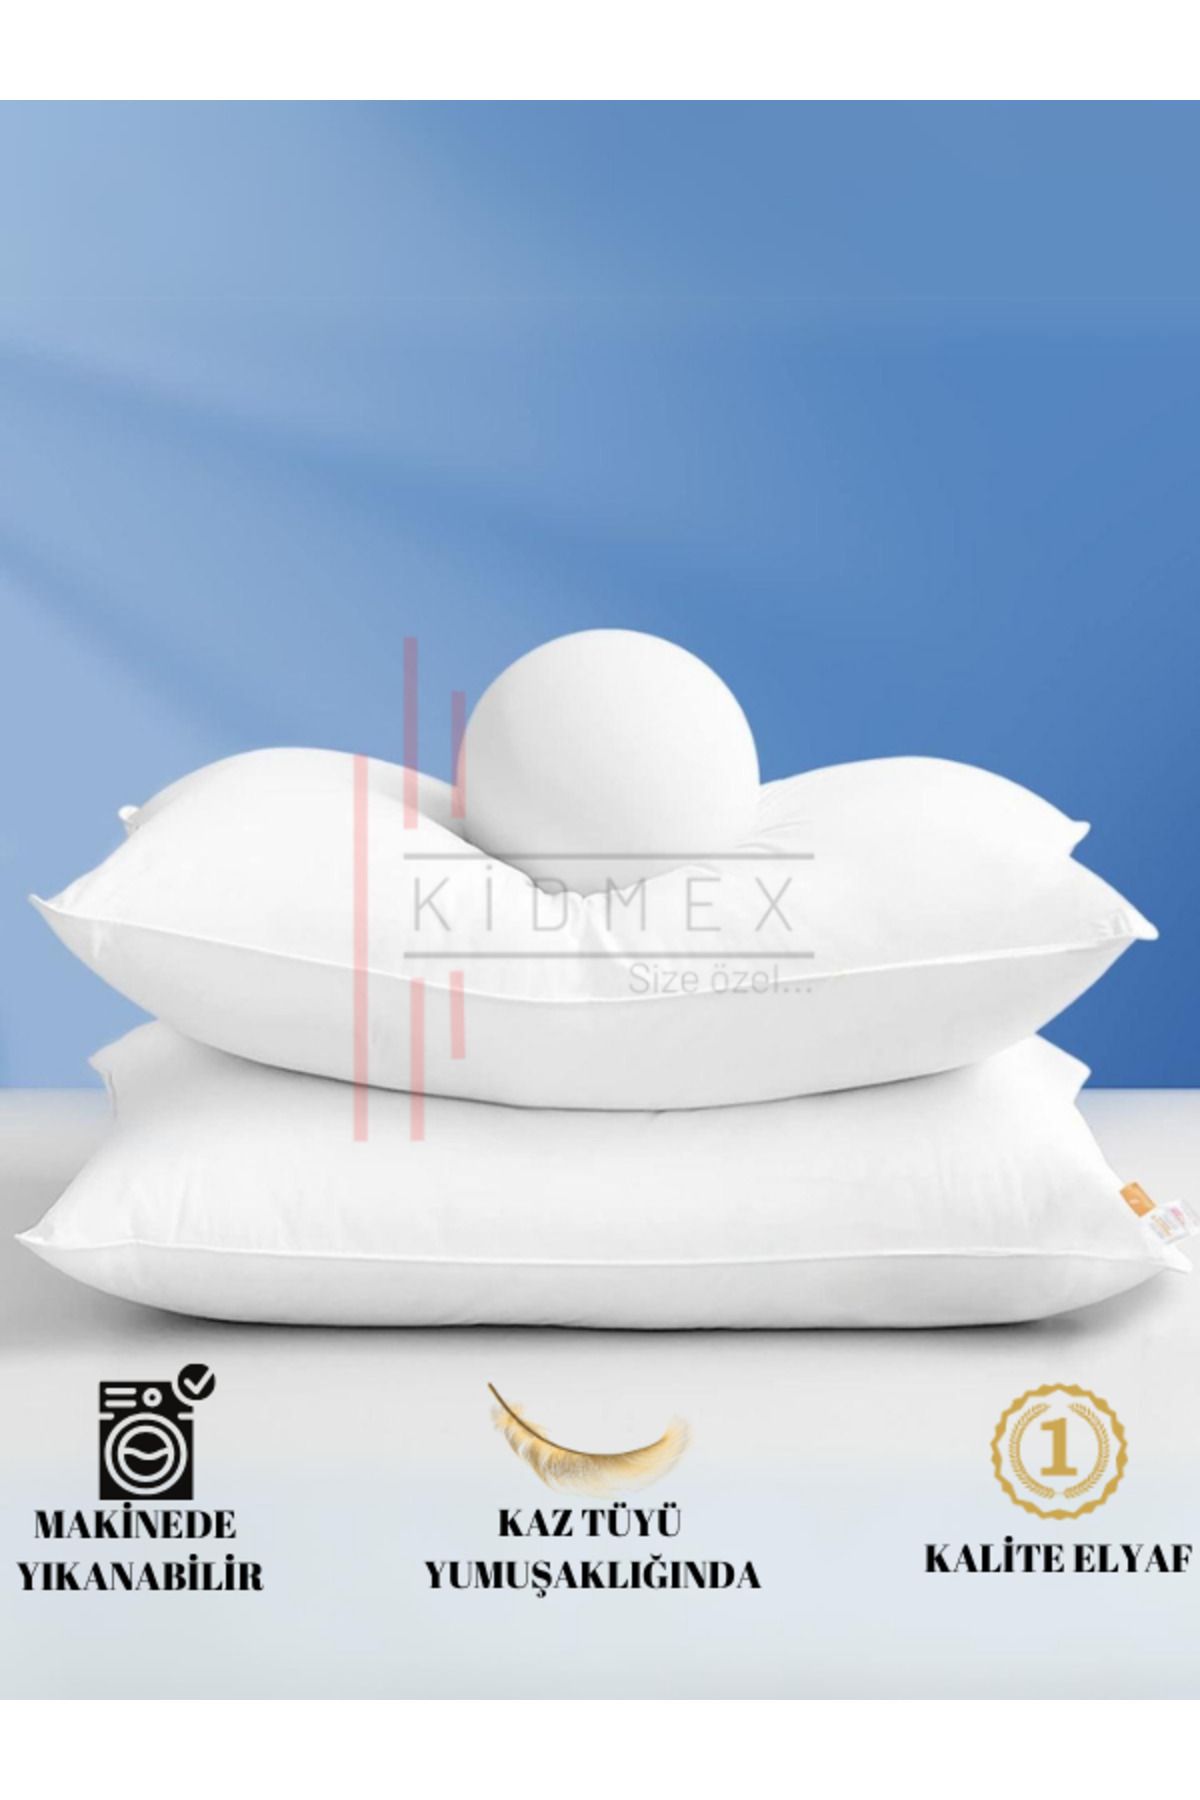 Kidmex 2 Adet Rulo Pack Premium Yüksek Yastık (1 ADET 700GR)